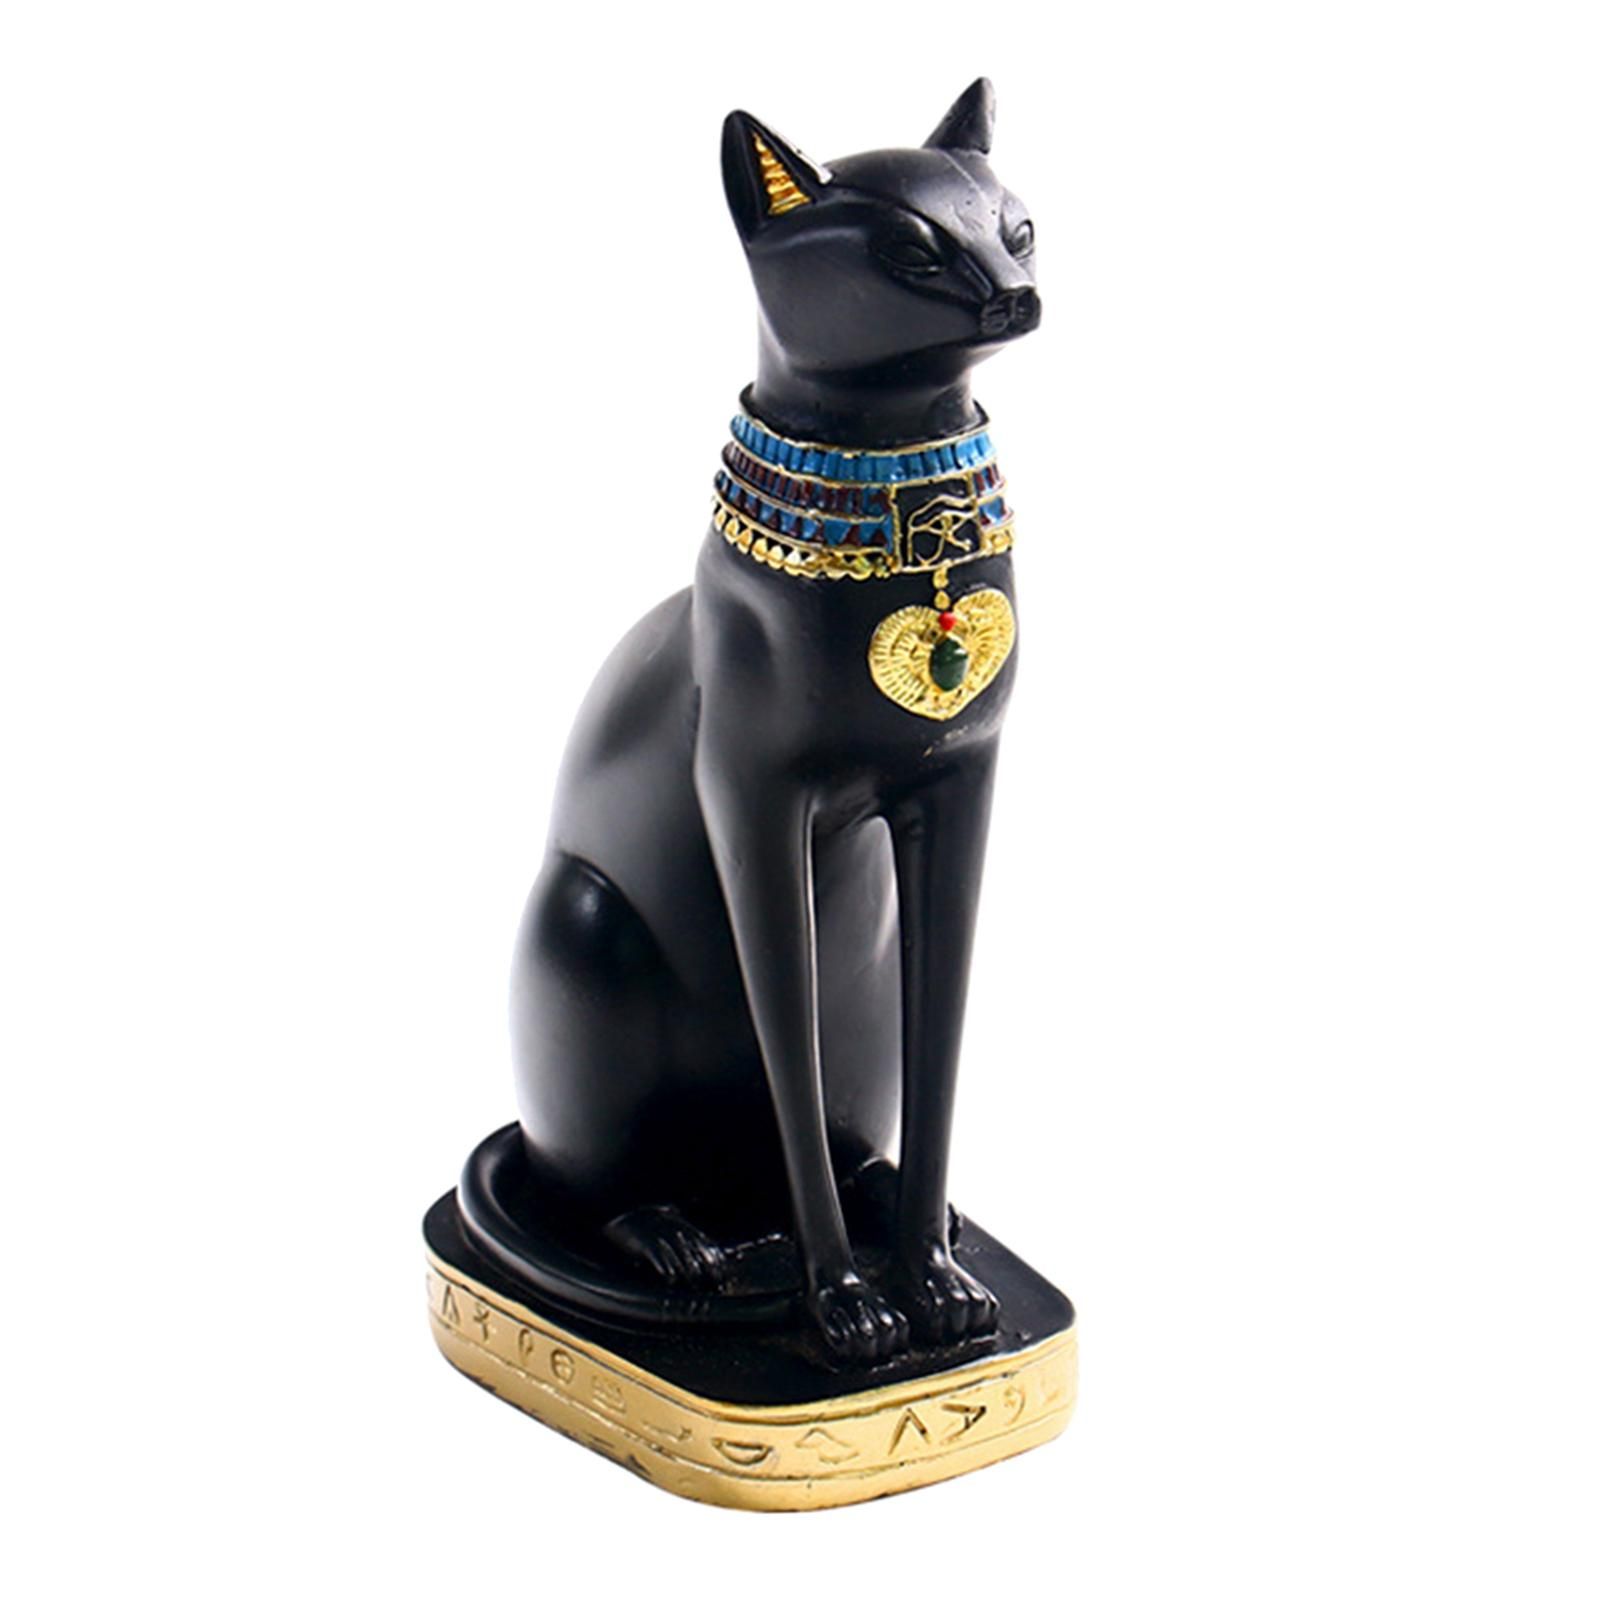 статуя кошки в египте